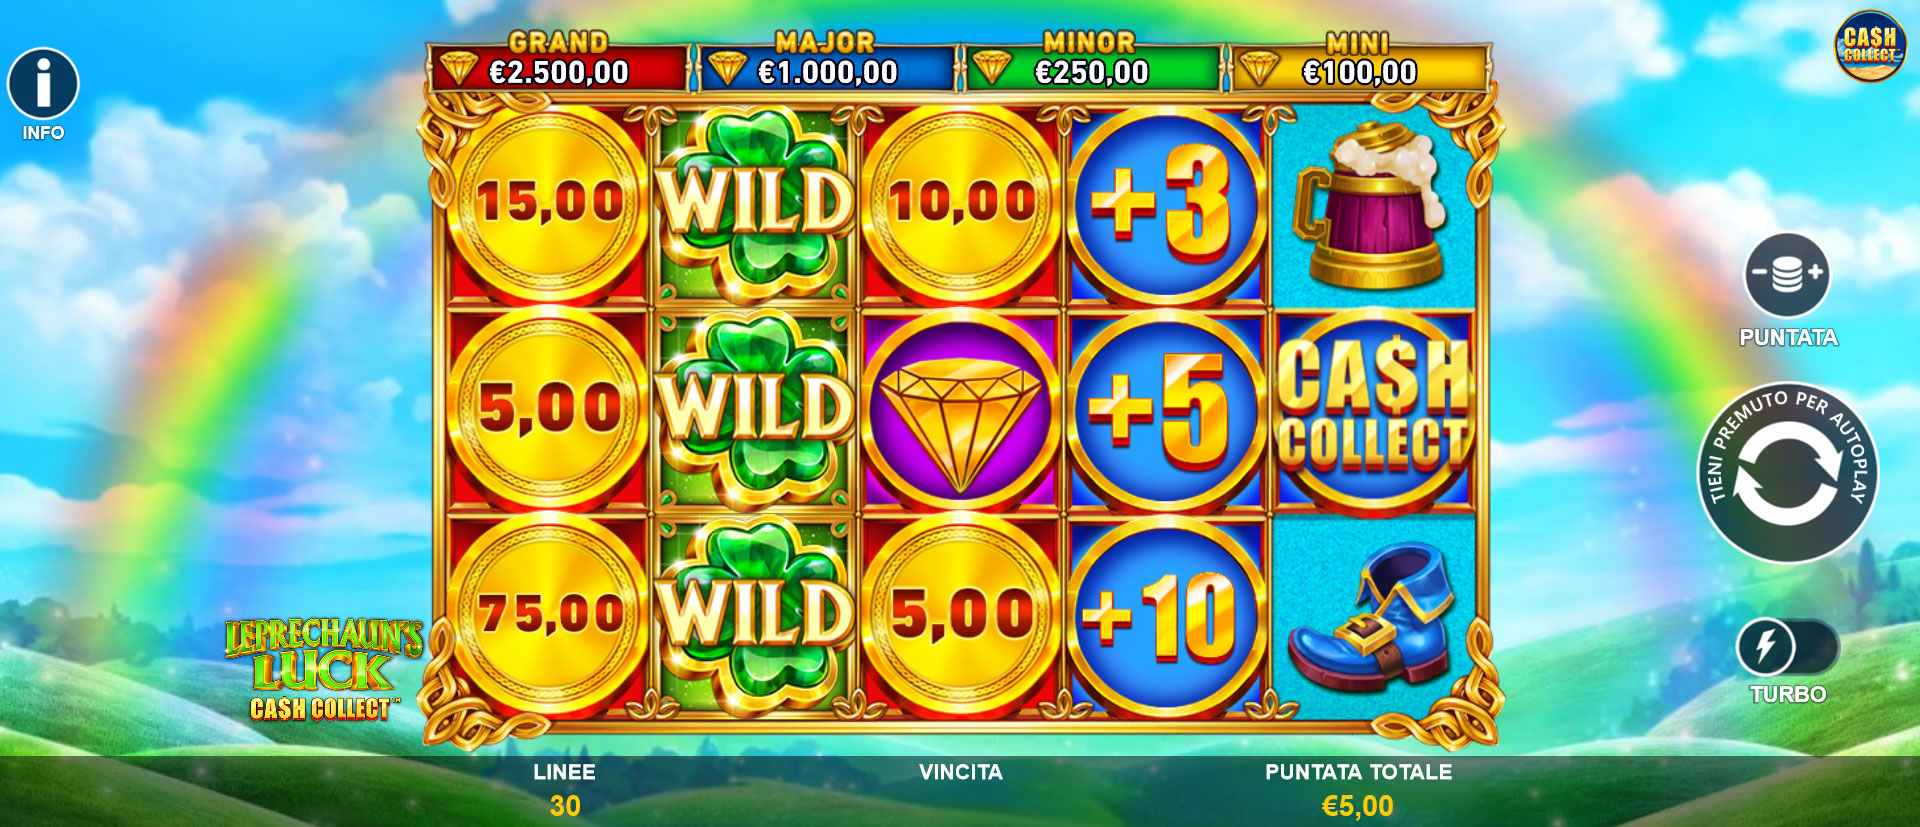 griglia di gioco della slot online Leprechaun’s Luck Cash Collect